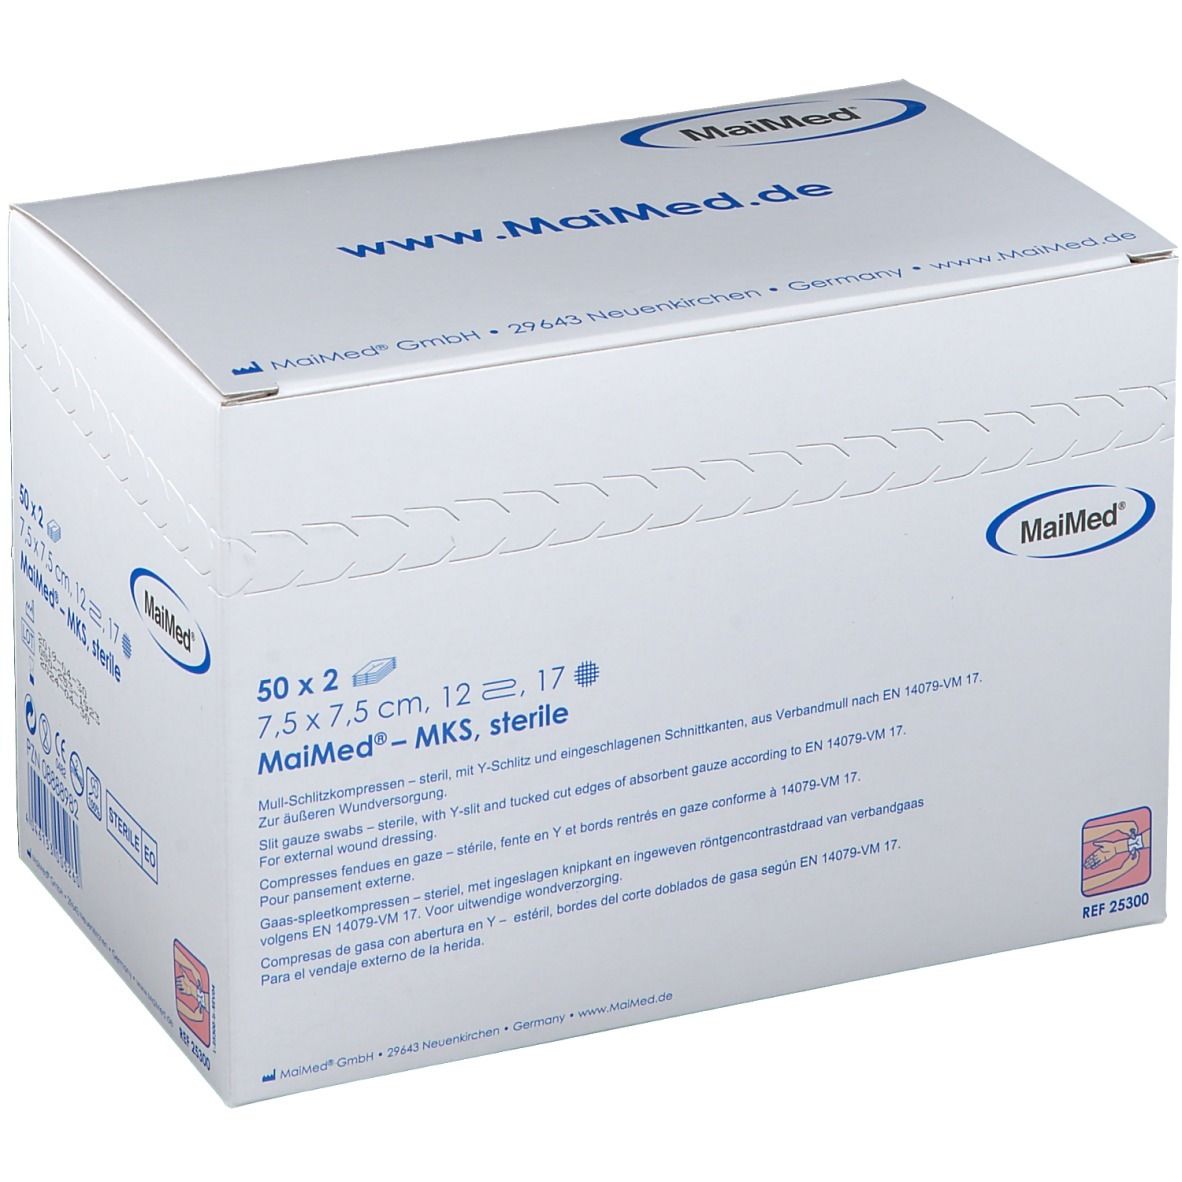 MaiMed® Vlies-Schlitzkompressen 7,5 x 7,5 cm 12 fach steril